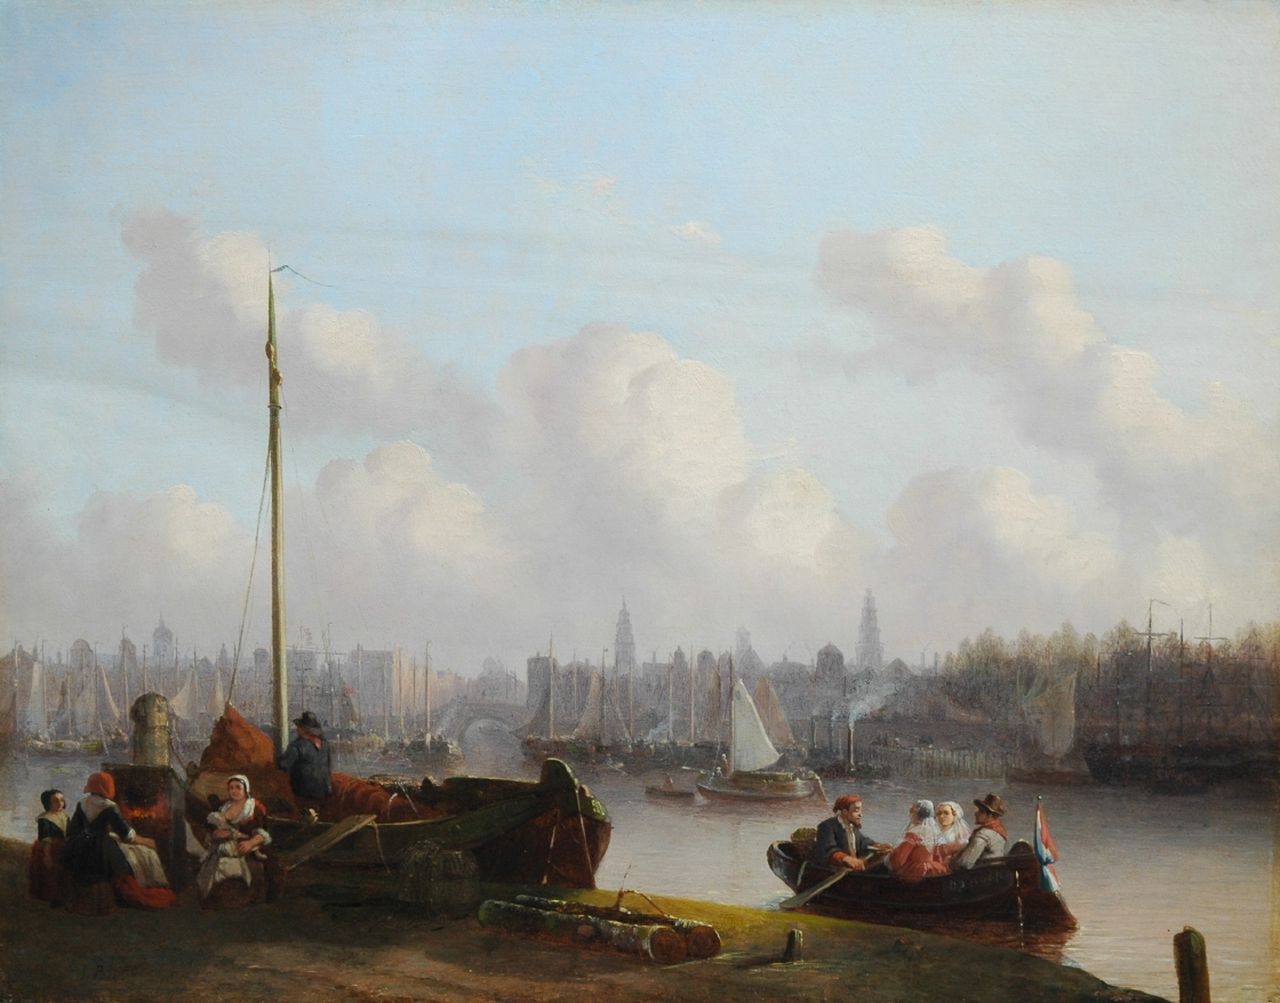 Bles J.  | Joseph Bles, Langs de kade, Antwerpen, olieverf op paneel 44,1 x 56,4 cm, gesigneerd linksonder en gedateerd 18.4 (1854?)